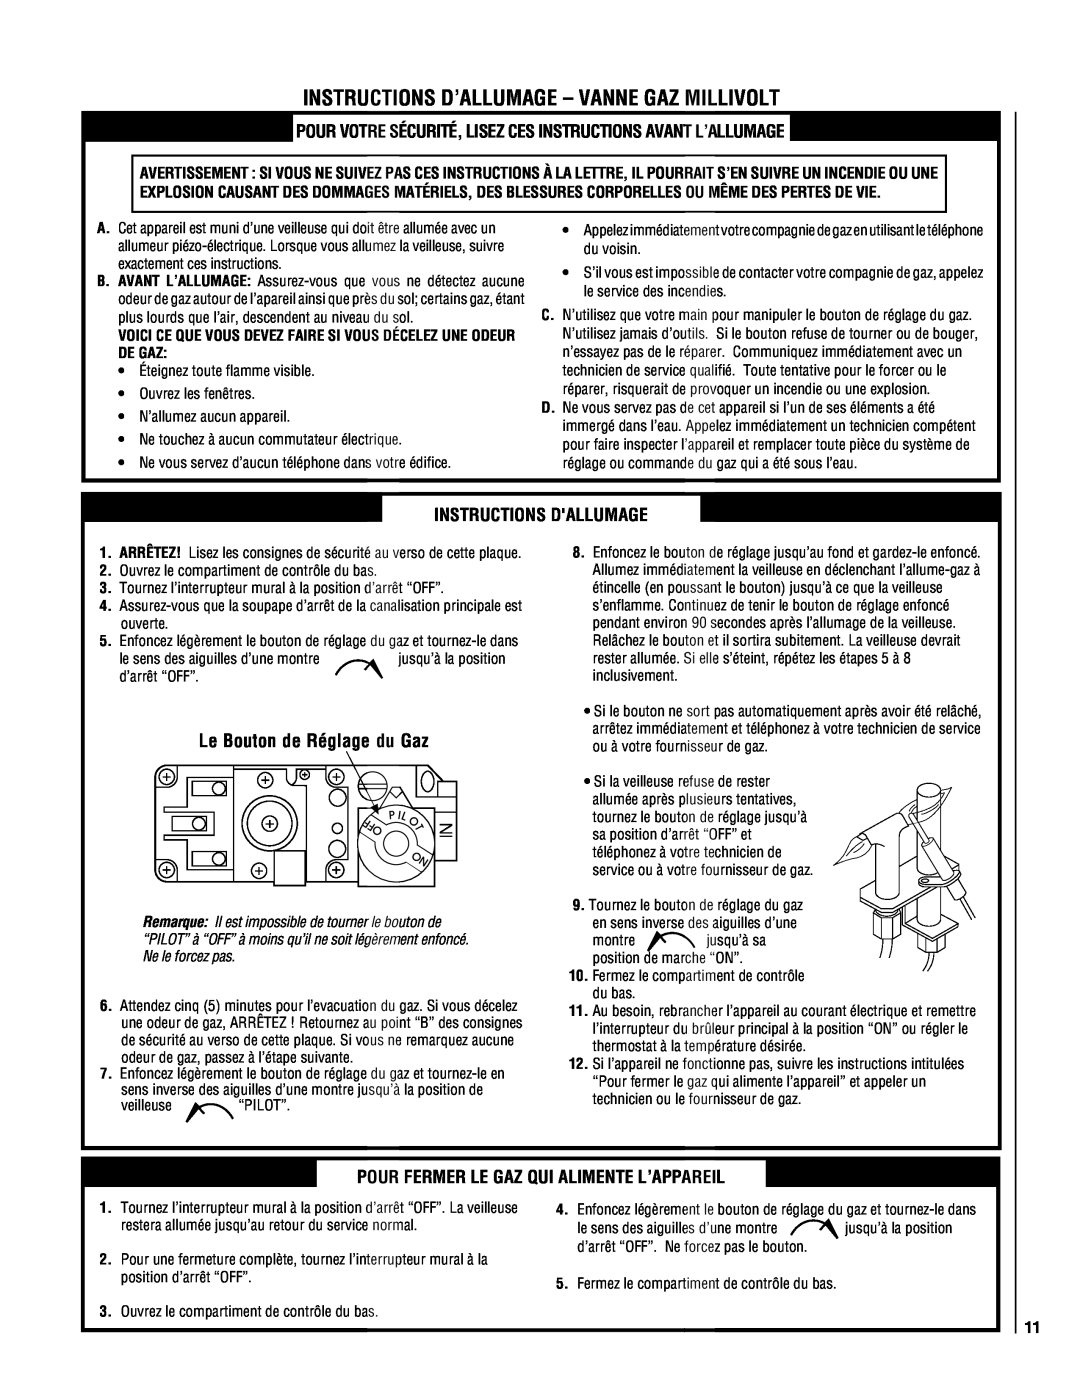 TOA Electronics P0055-DRG manual Instructions D’Allumage - Vanne Gaz Millivolt, Le Bouton de Réglage du Gaz 